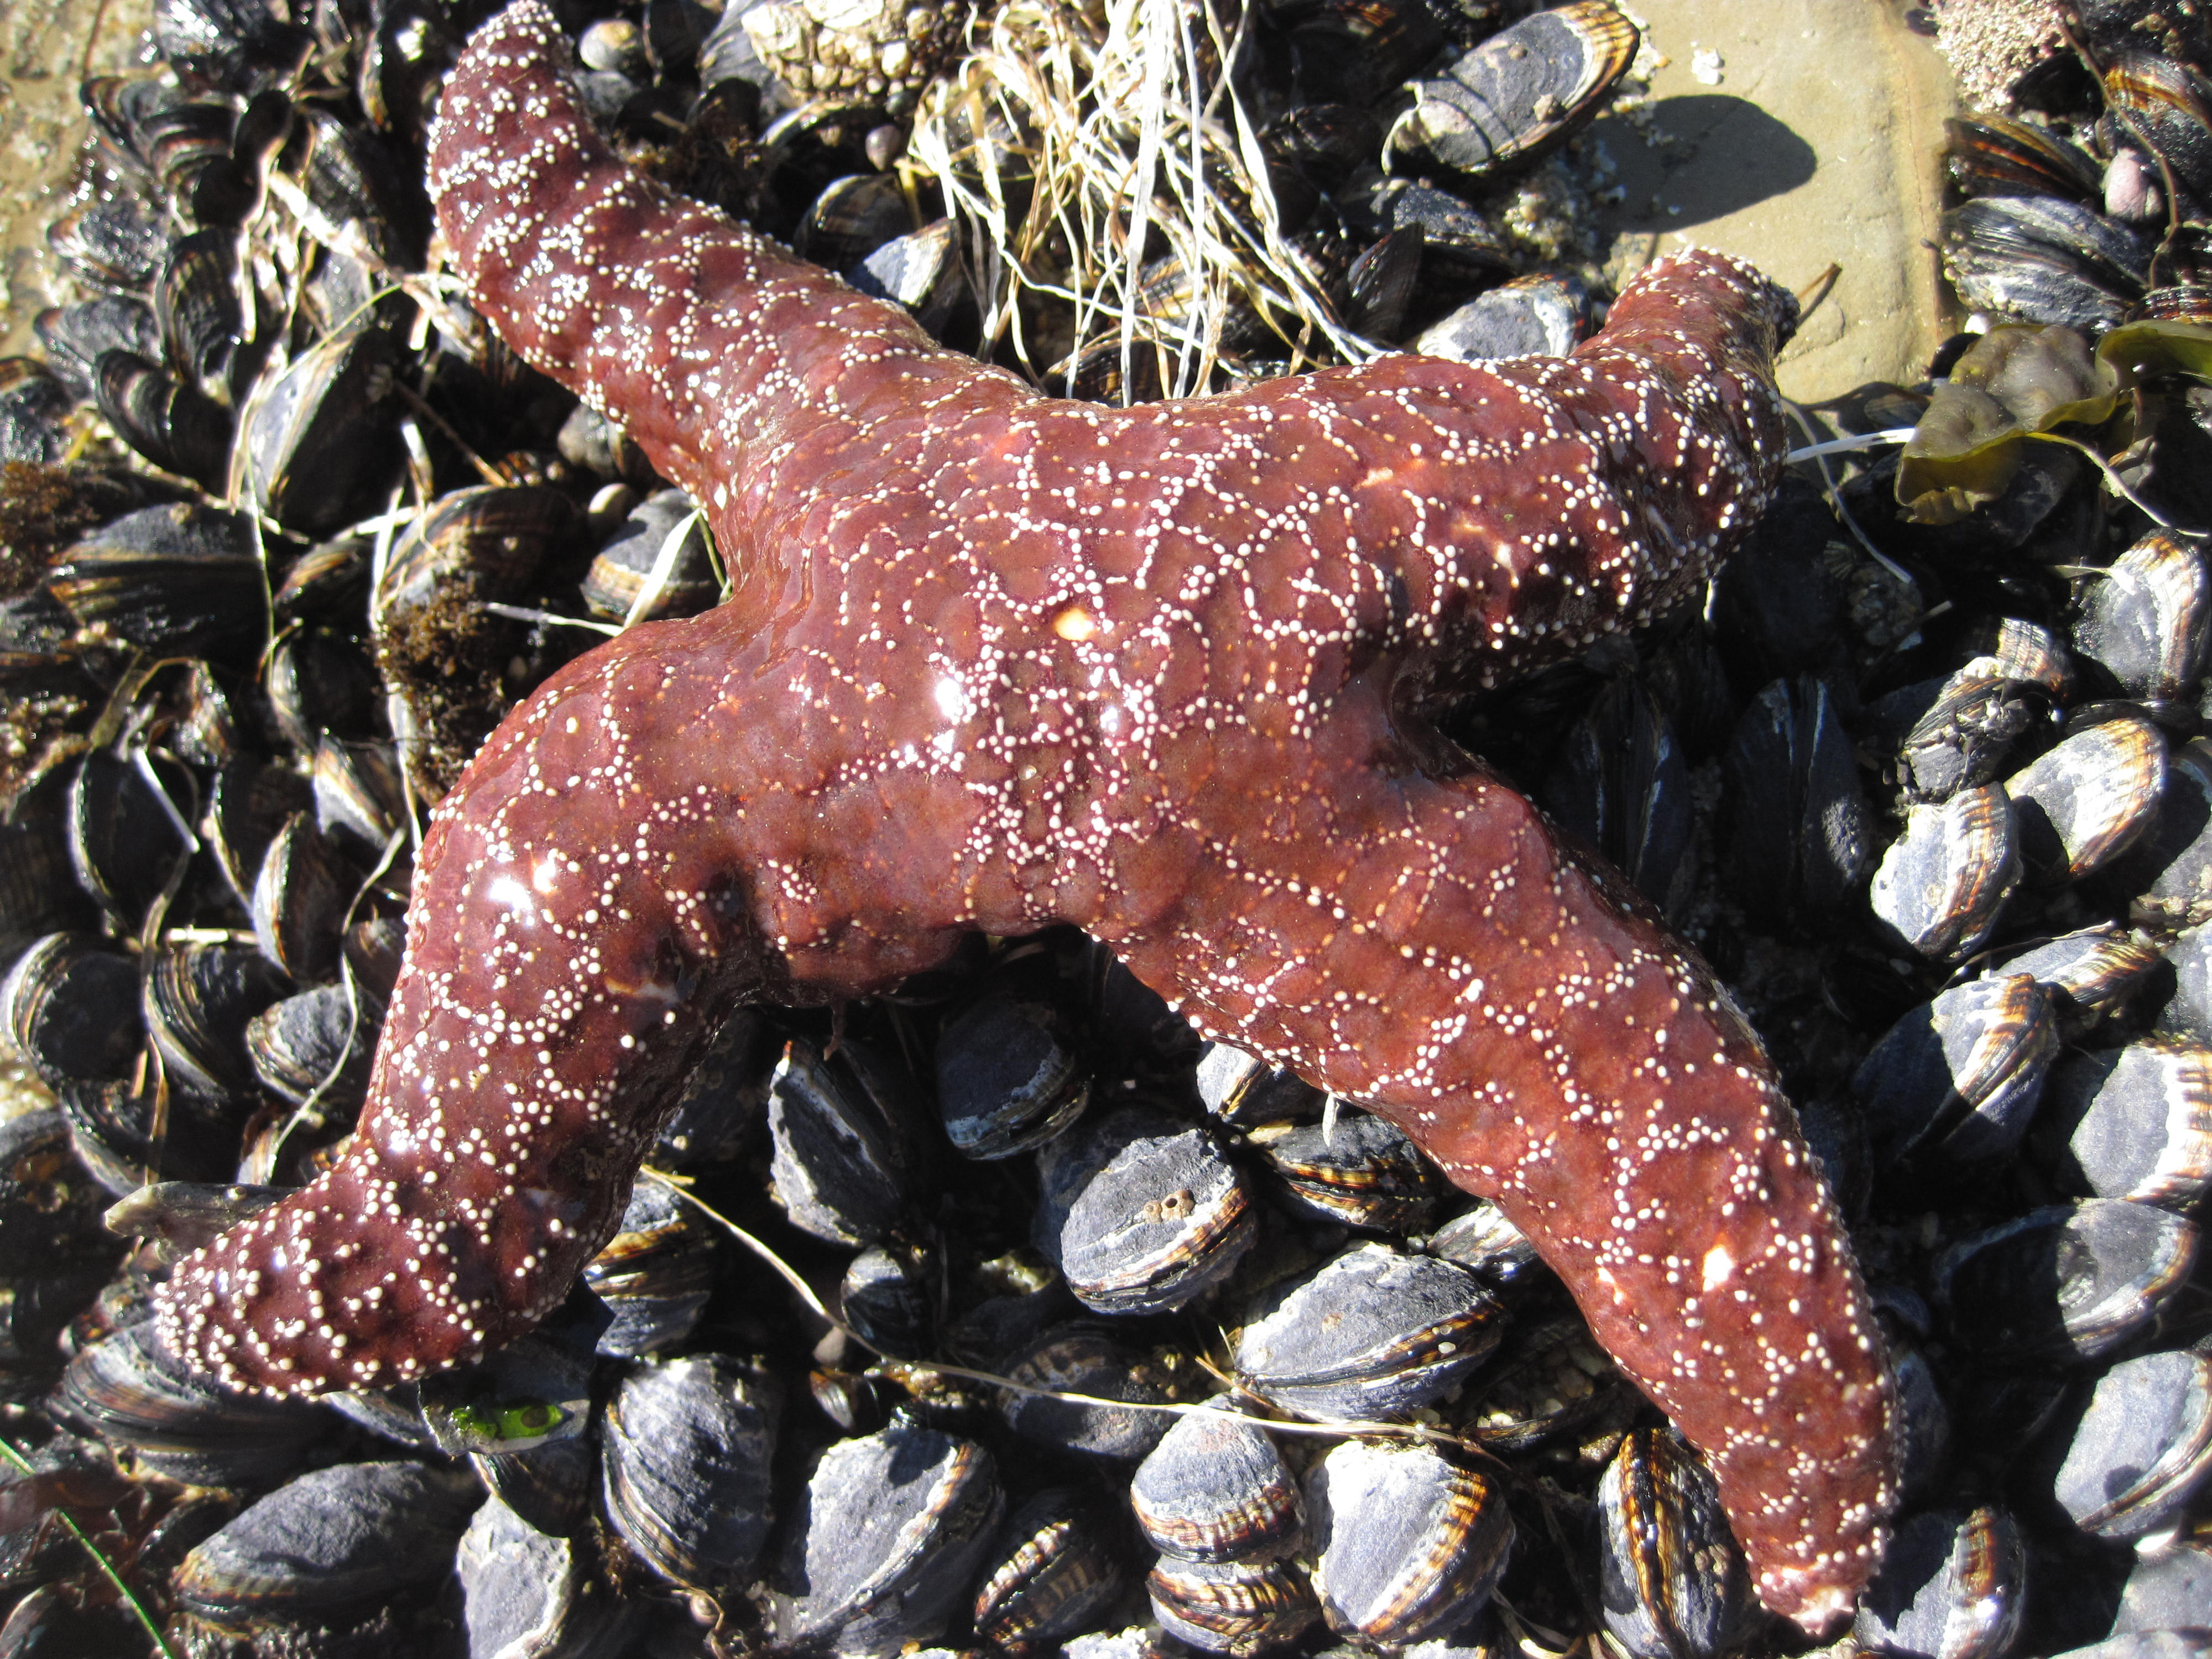 Devastating Starfish Disease May Be Caused by Waterborne Virus